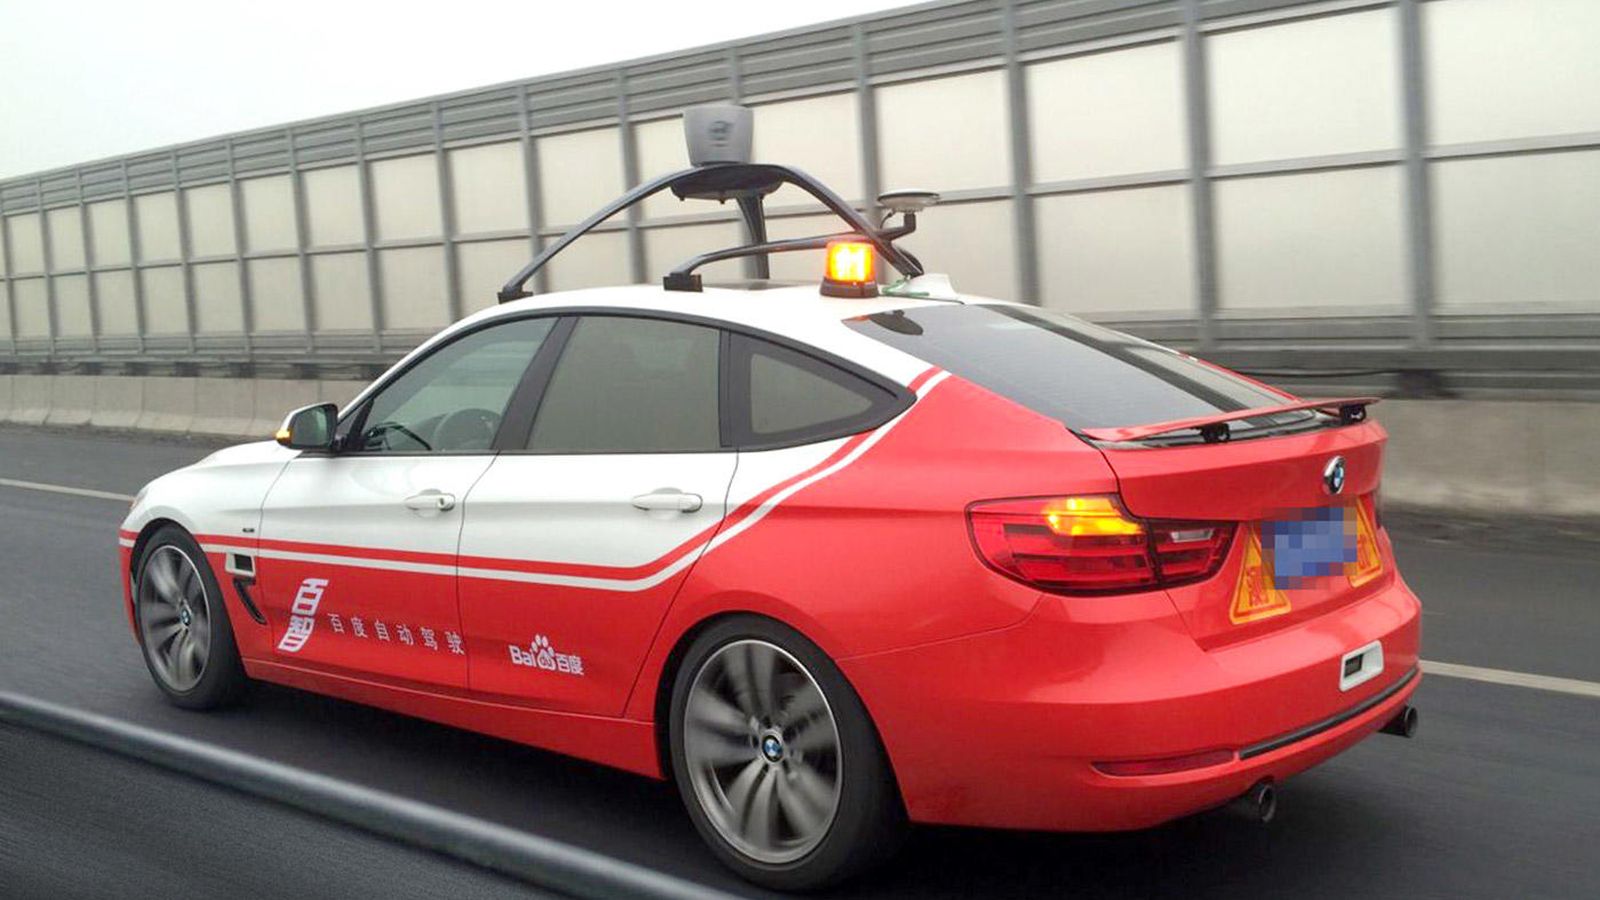 Foto: El coche autónomo que está probando el buscador chino Baidu. (Foto: Baidu)